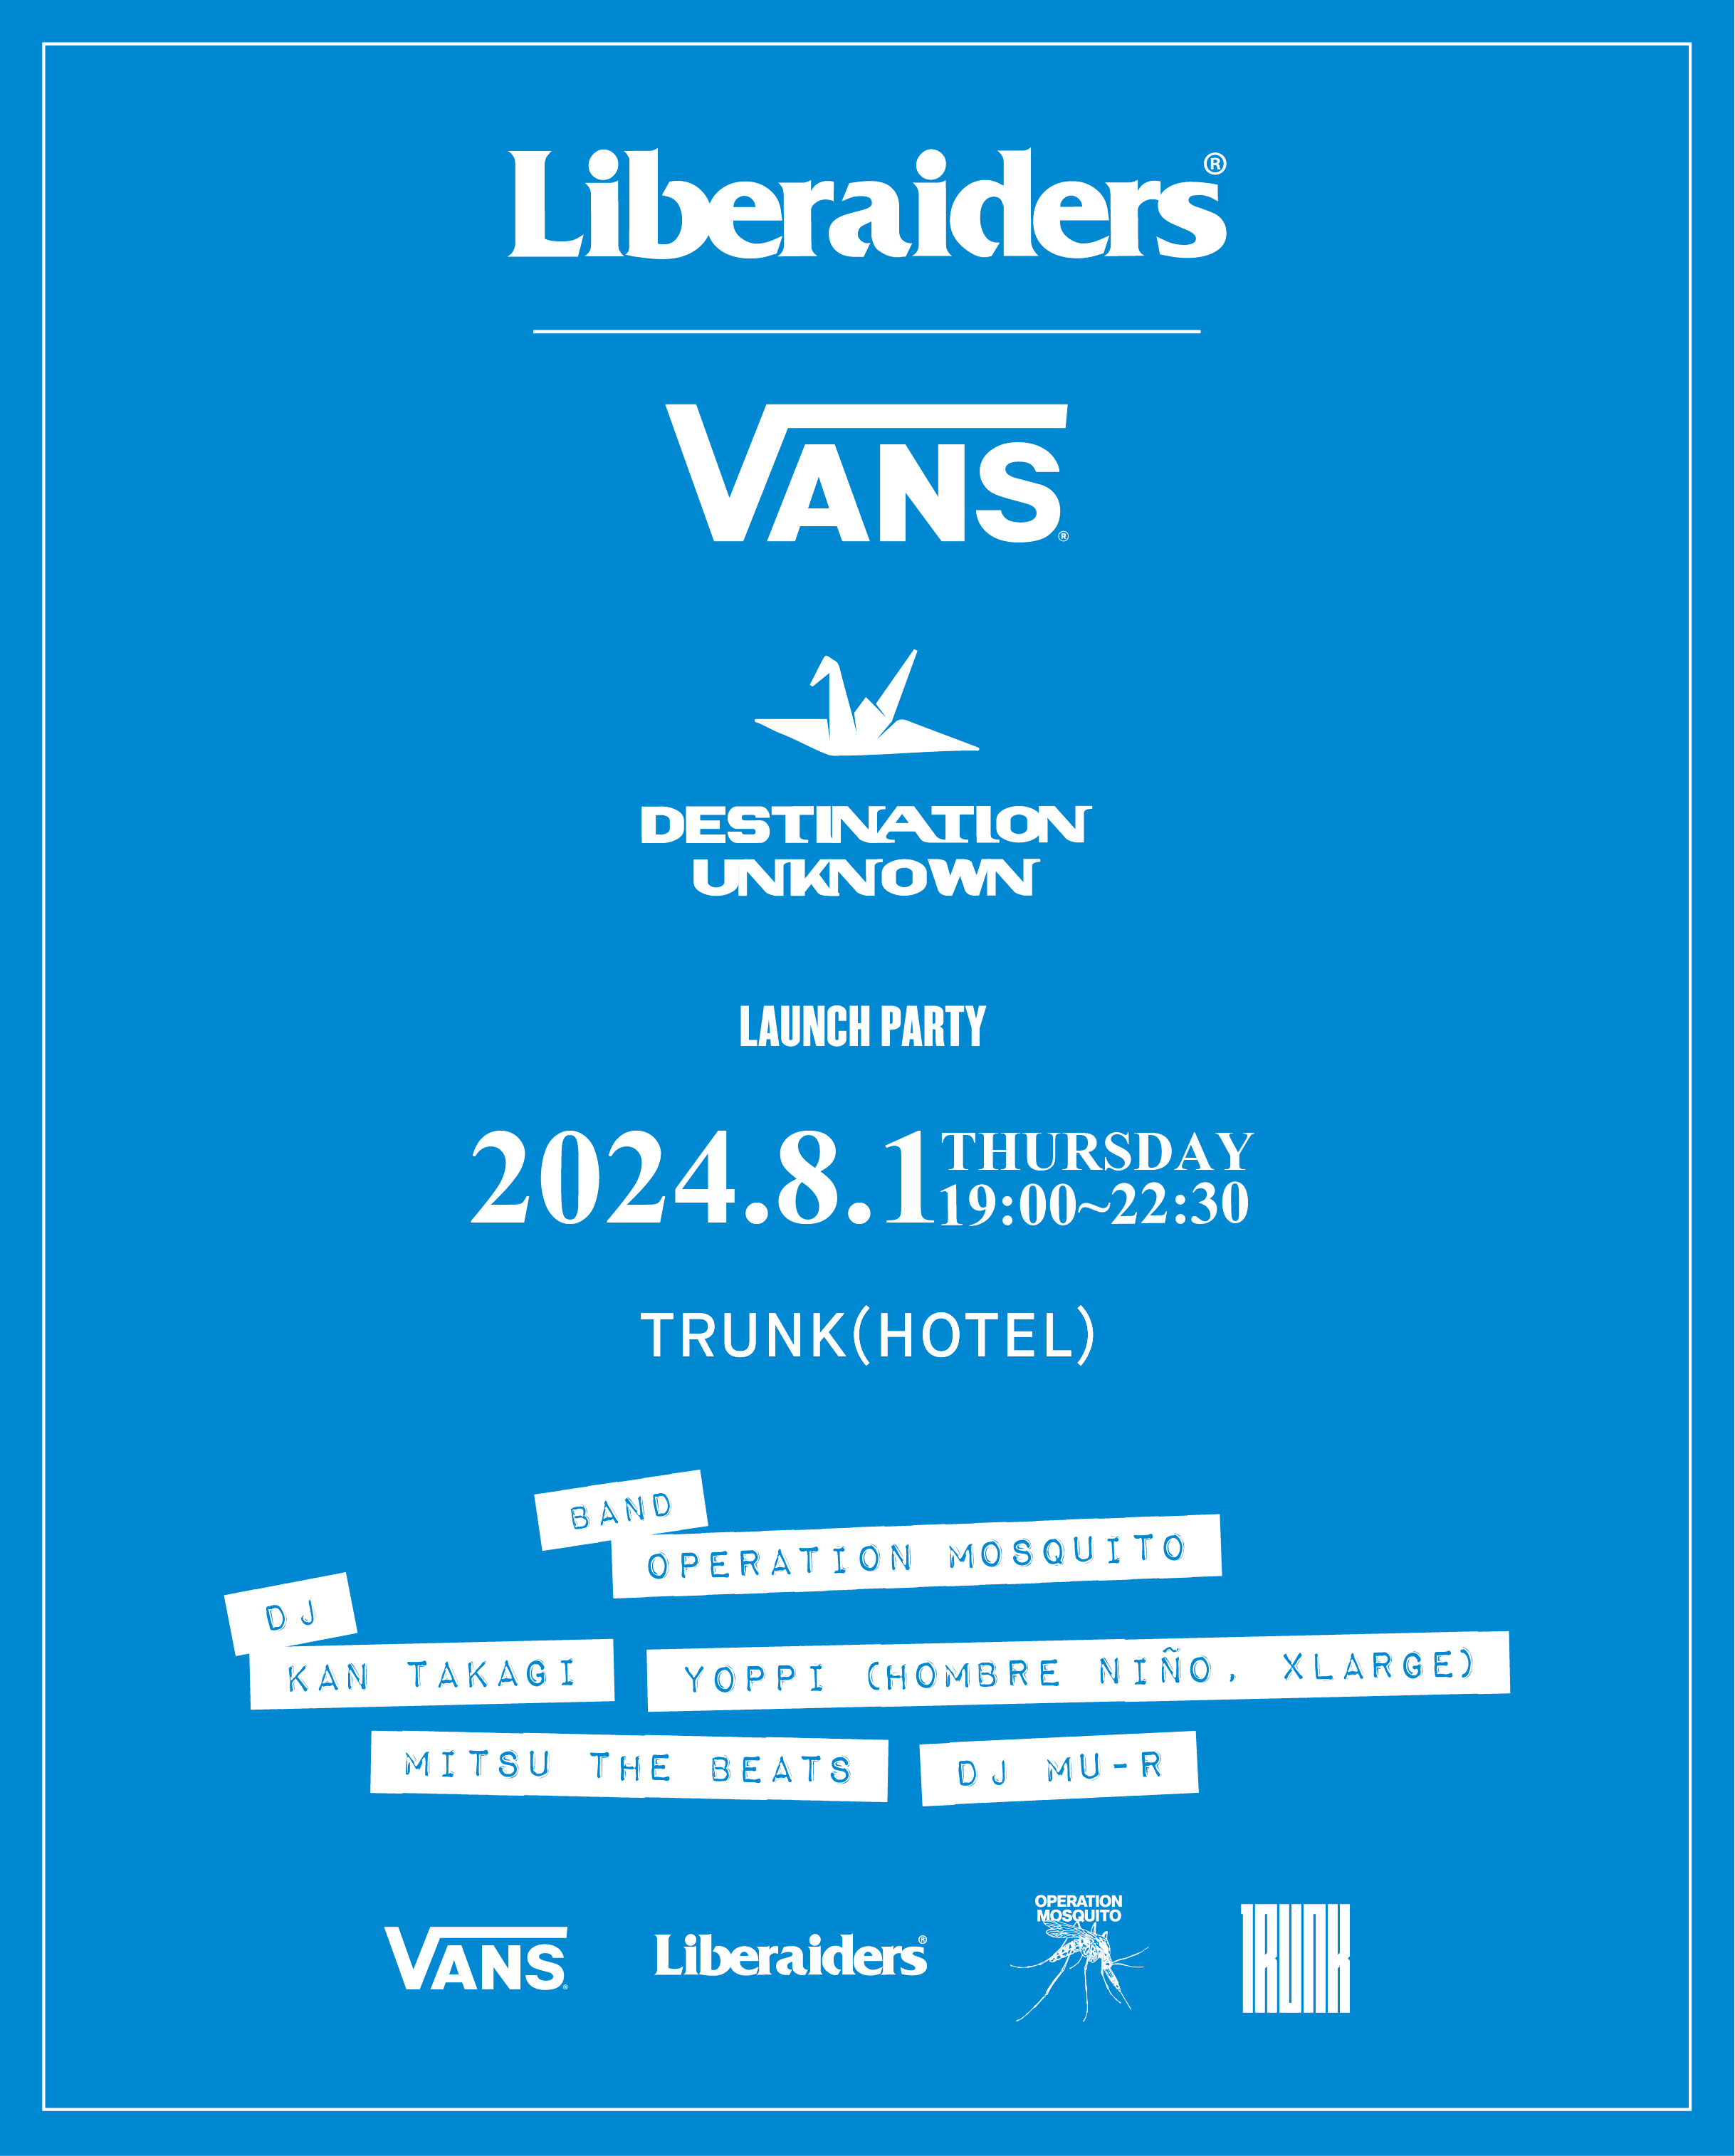 Vans x Liberaiders® 「Destination Unknown」